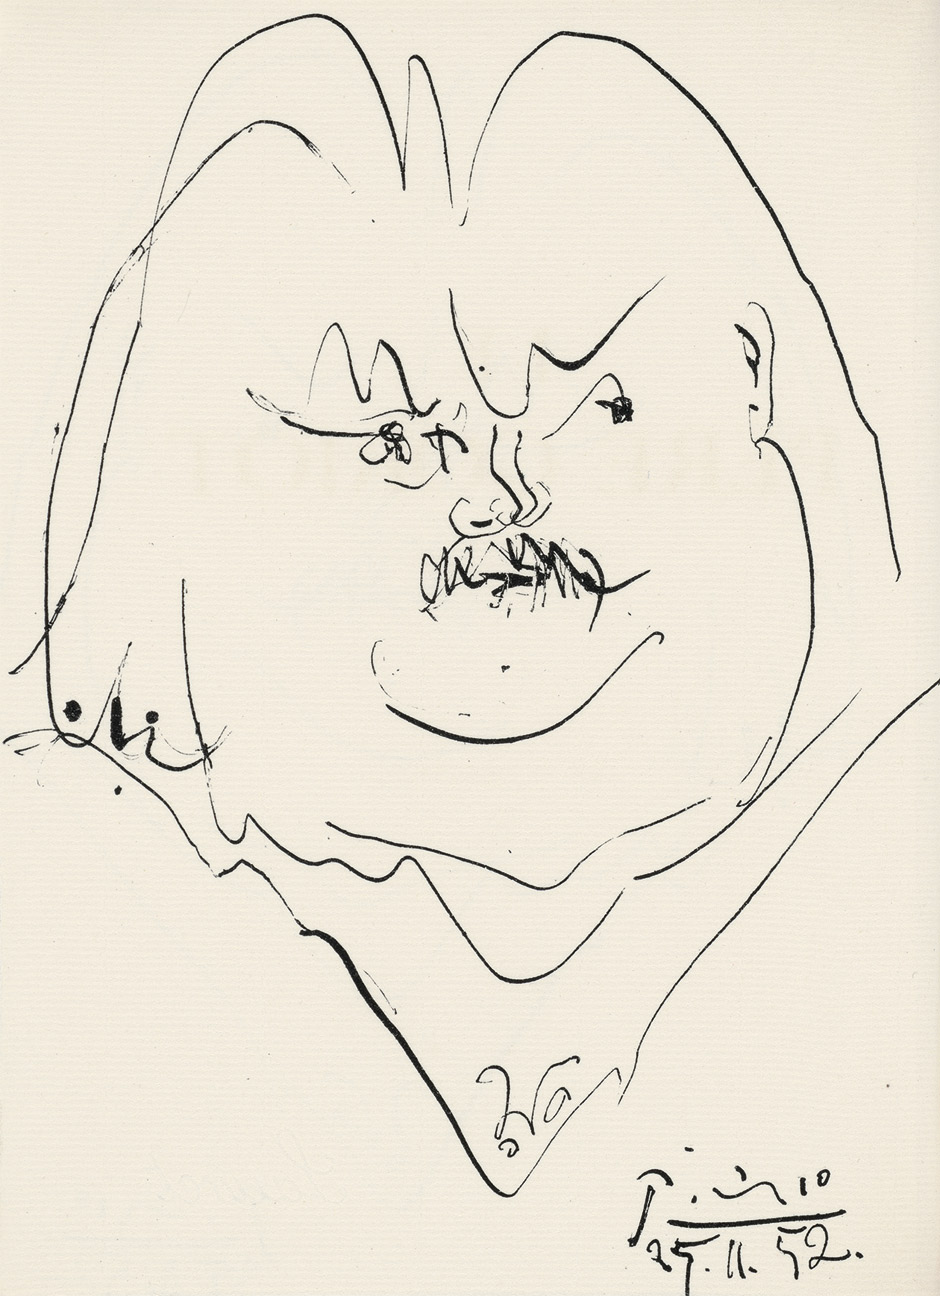 Lot 3344, Auction  115, Balzac, Honoré de und Picasso, Pablo - Illustr., Le Père Goriot